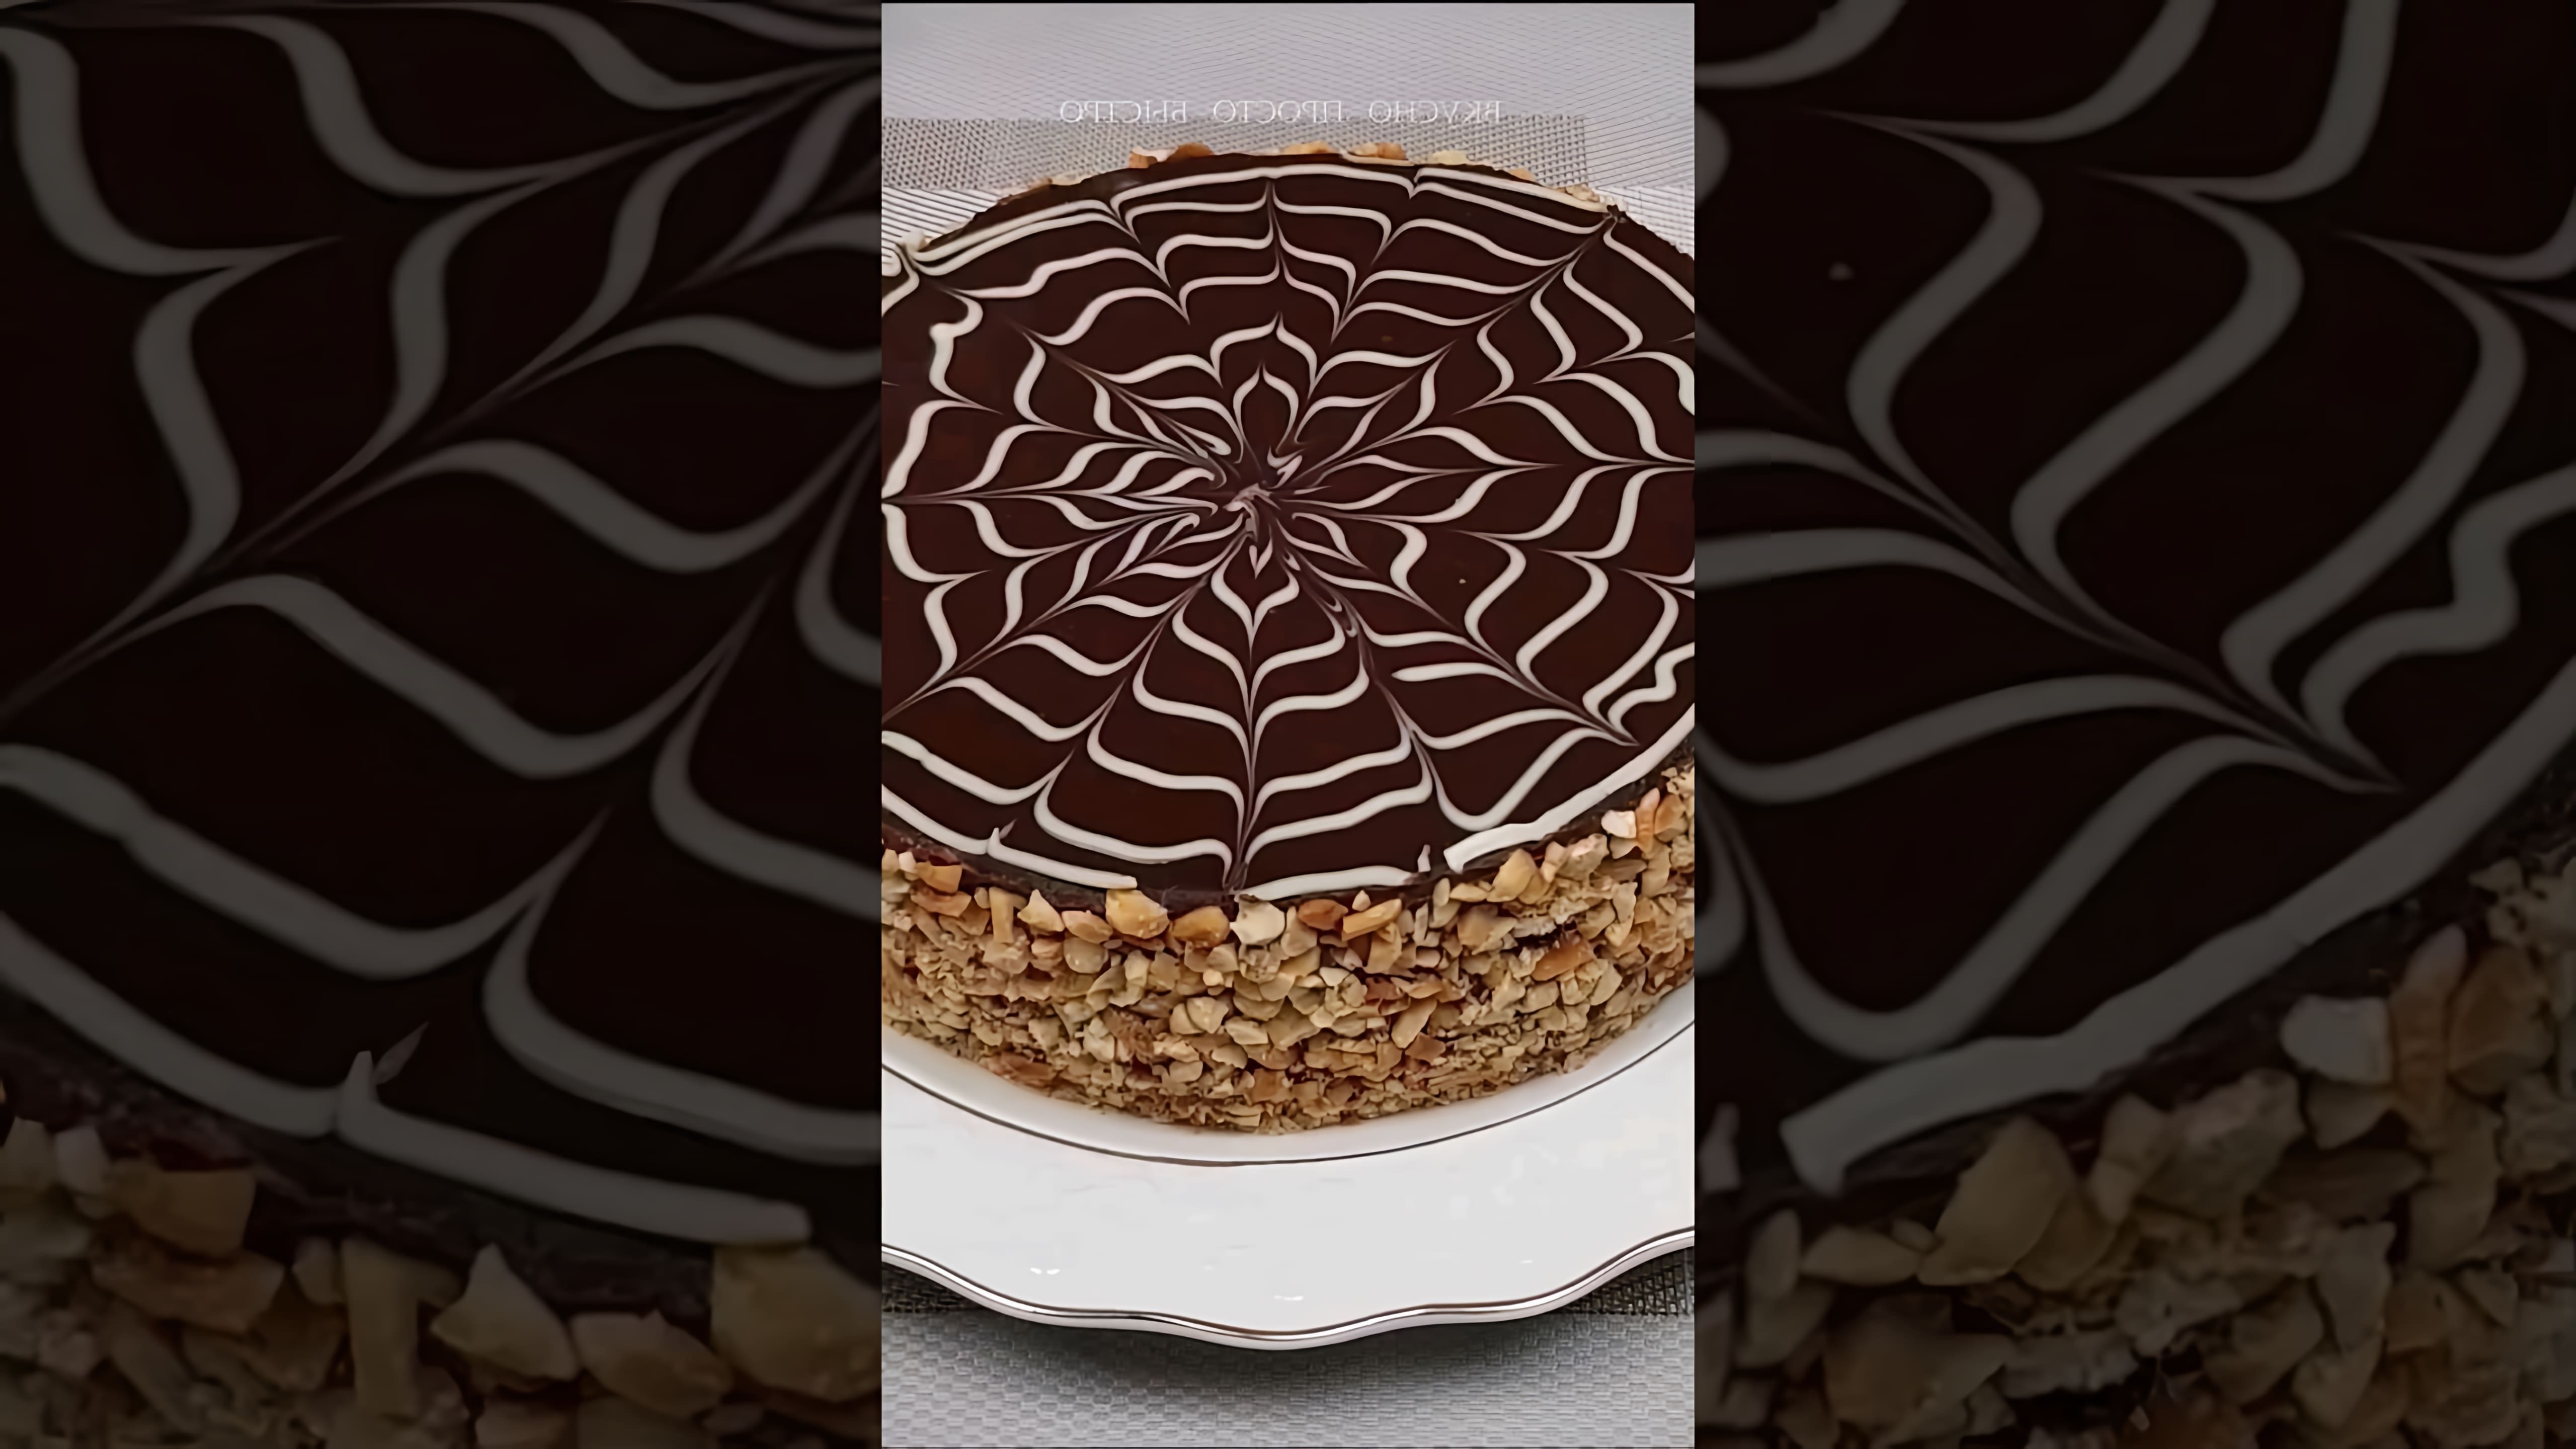 В этом видео демонстрируется рецепт шоколадно-орехового торта